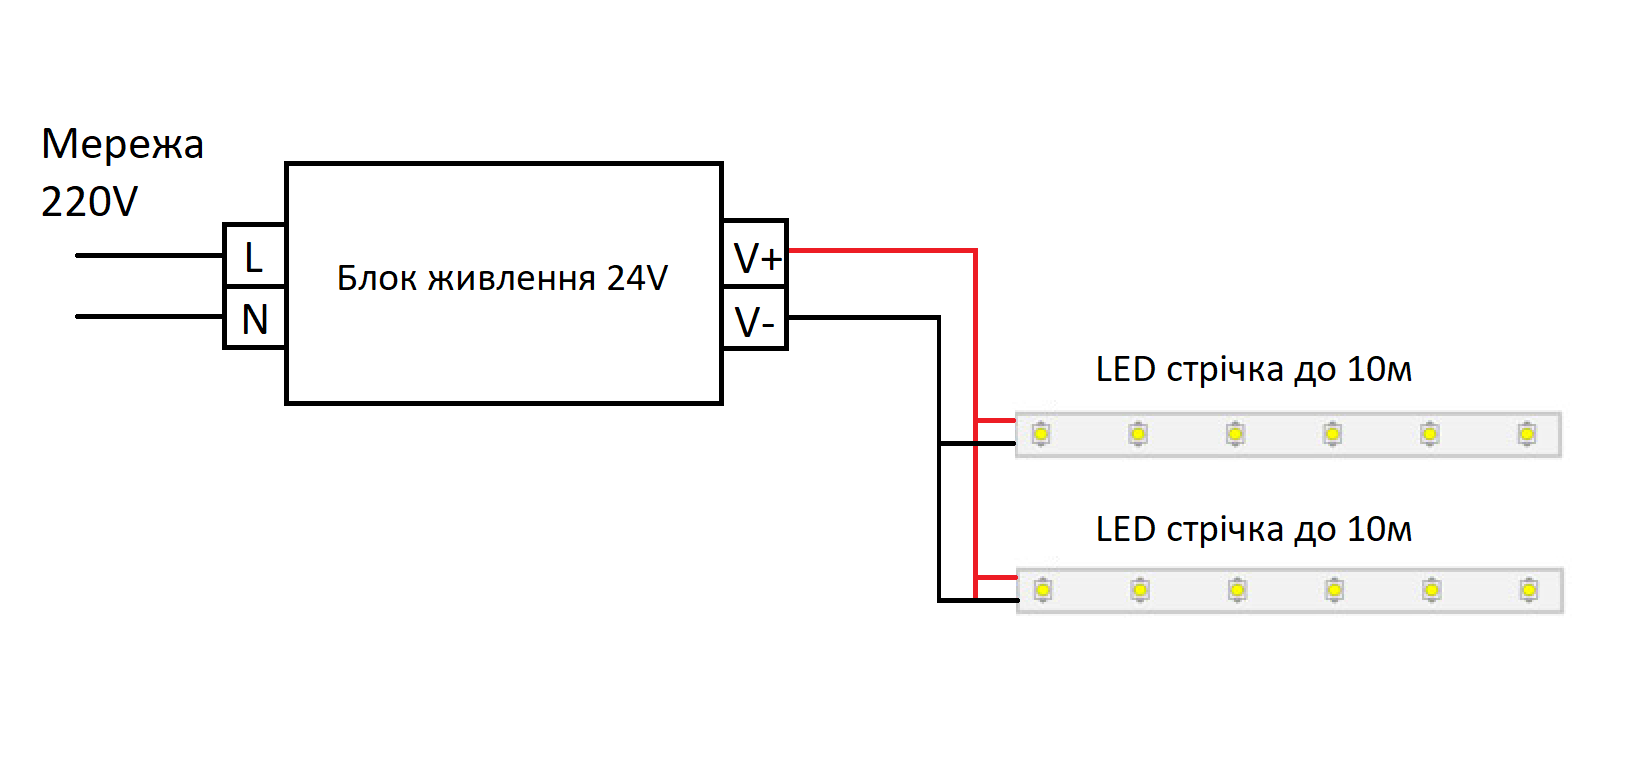 Схема підключення монохромної LED стрічки 24V